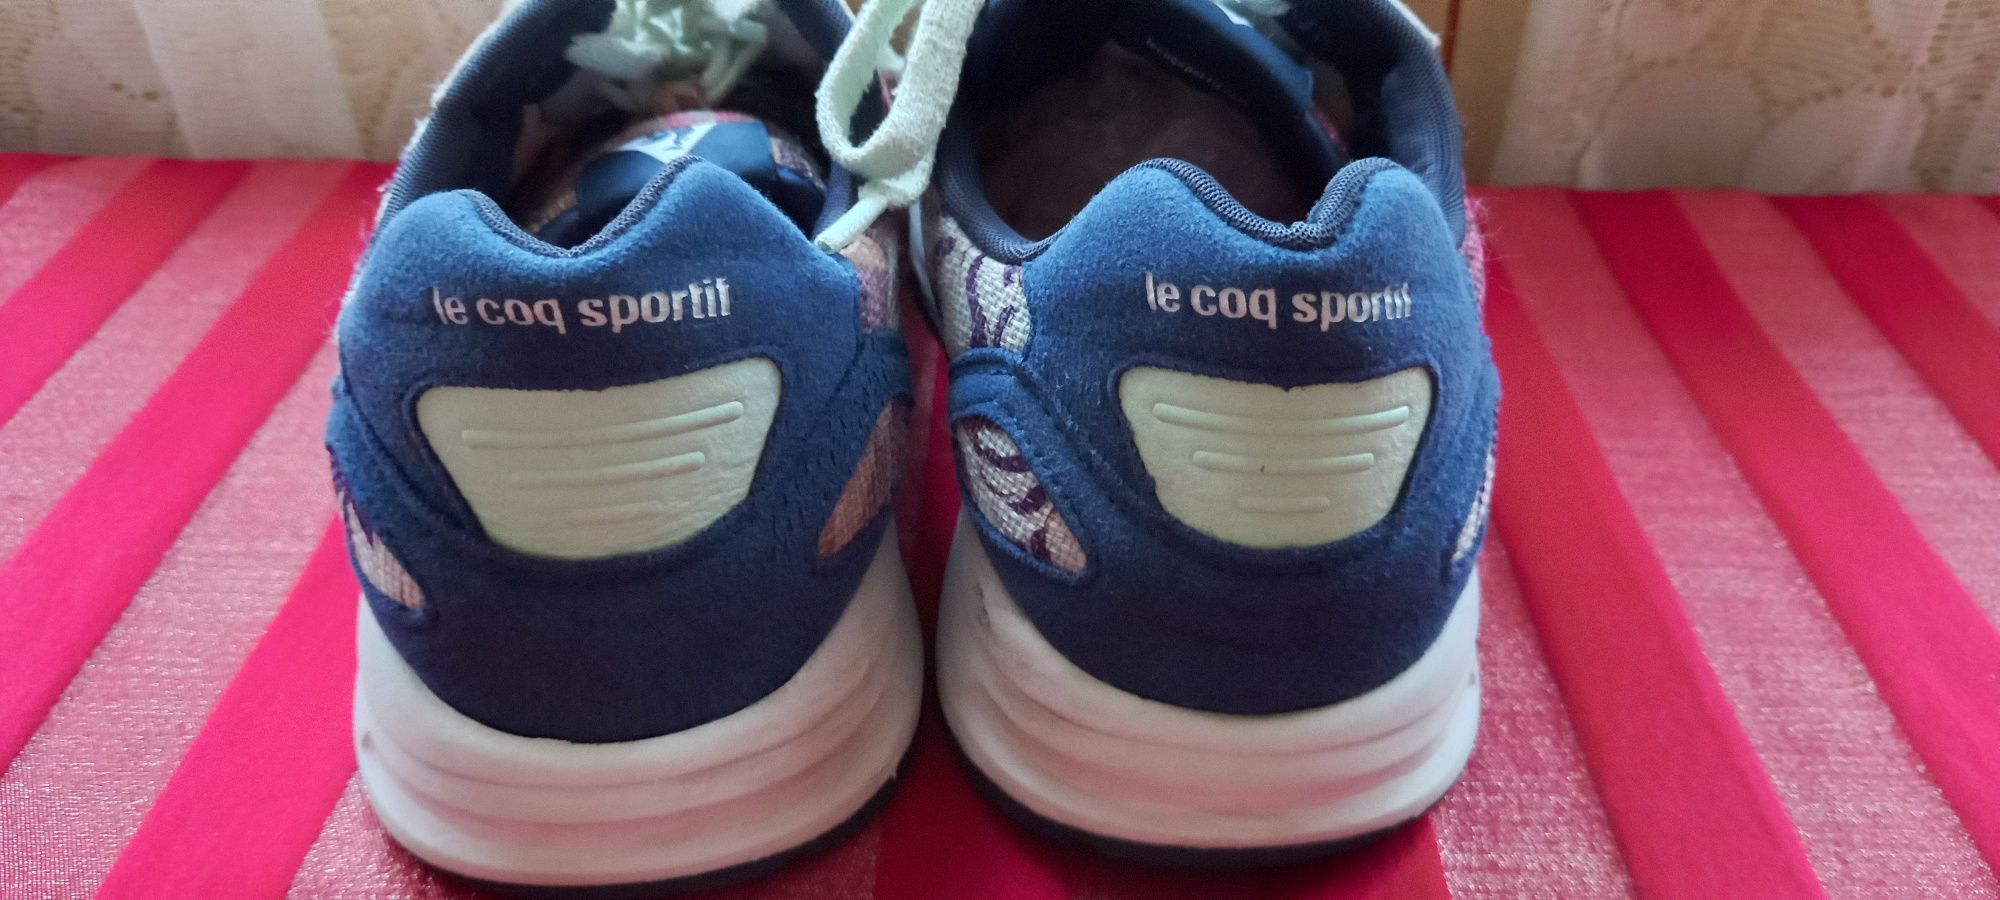 100 lei Adidasi Le Coq Sportif